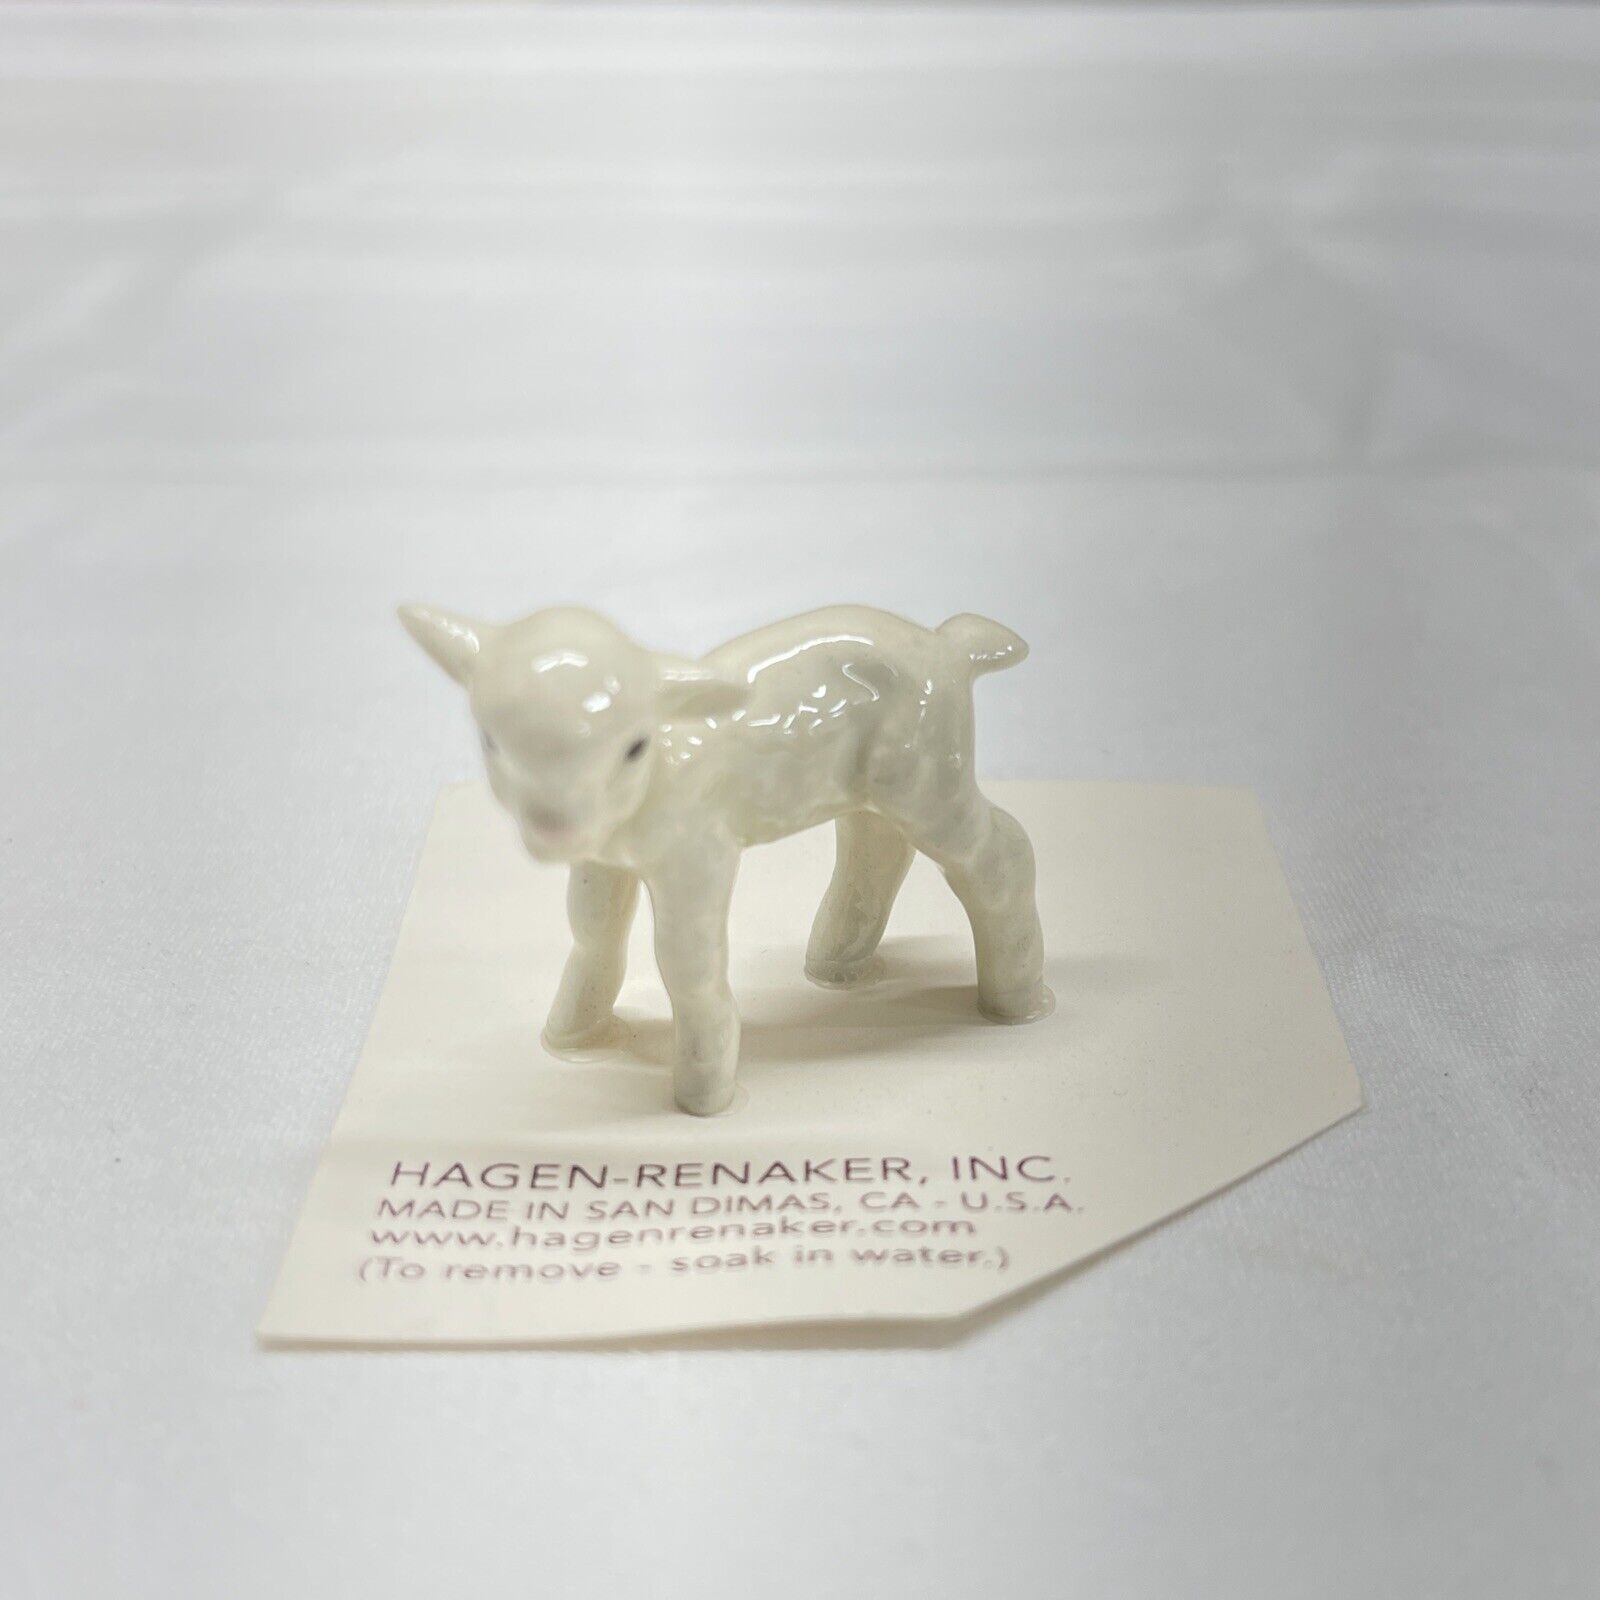 Hagen Renaker “Lamb” Ceramic Figurine Item #00276